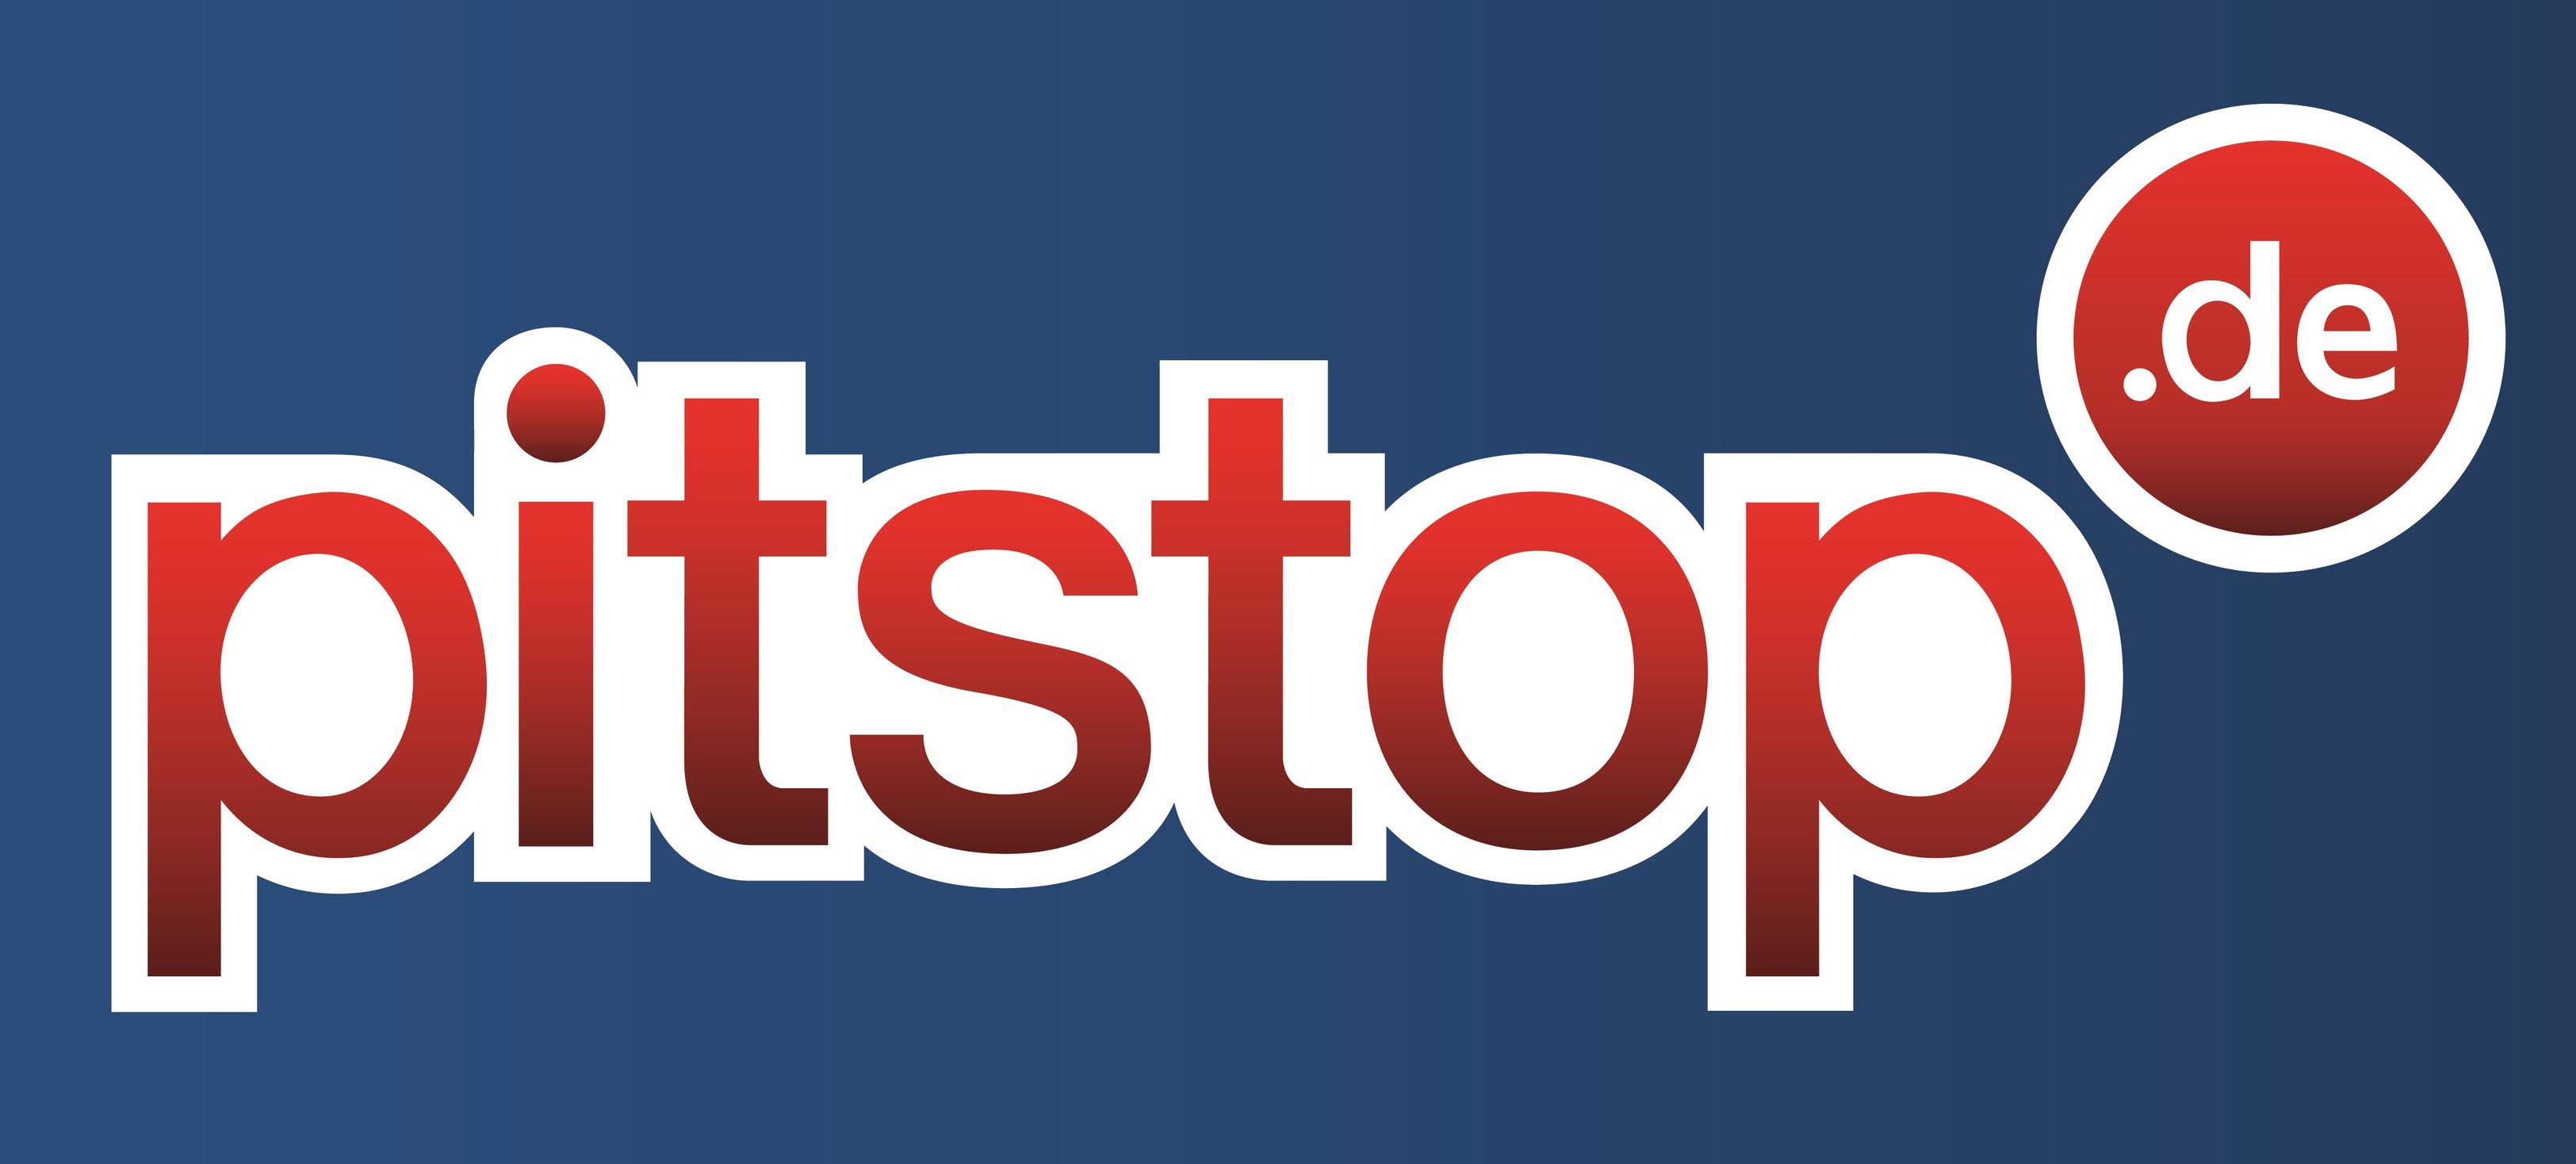 Pitstop ist der erste Reifenservice-Partner der das kostengünstige MOBOX Reifen-Abonnement